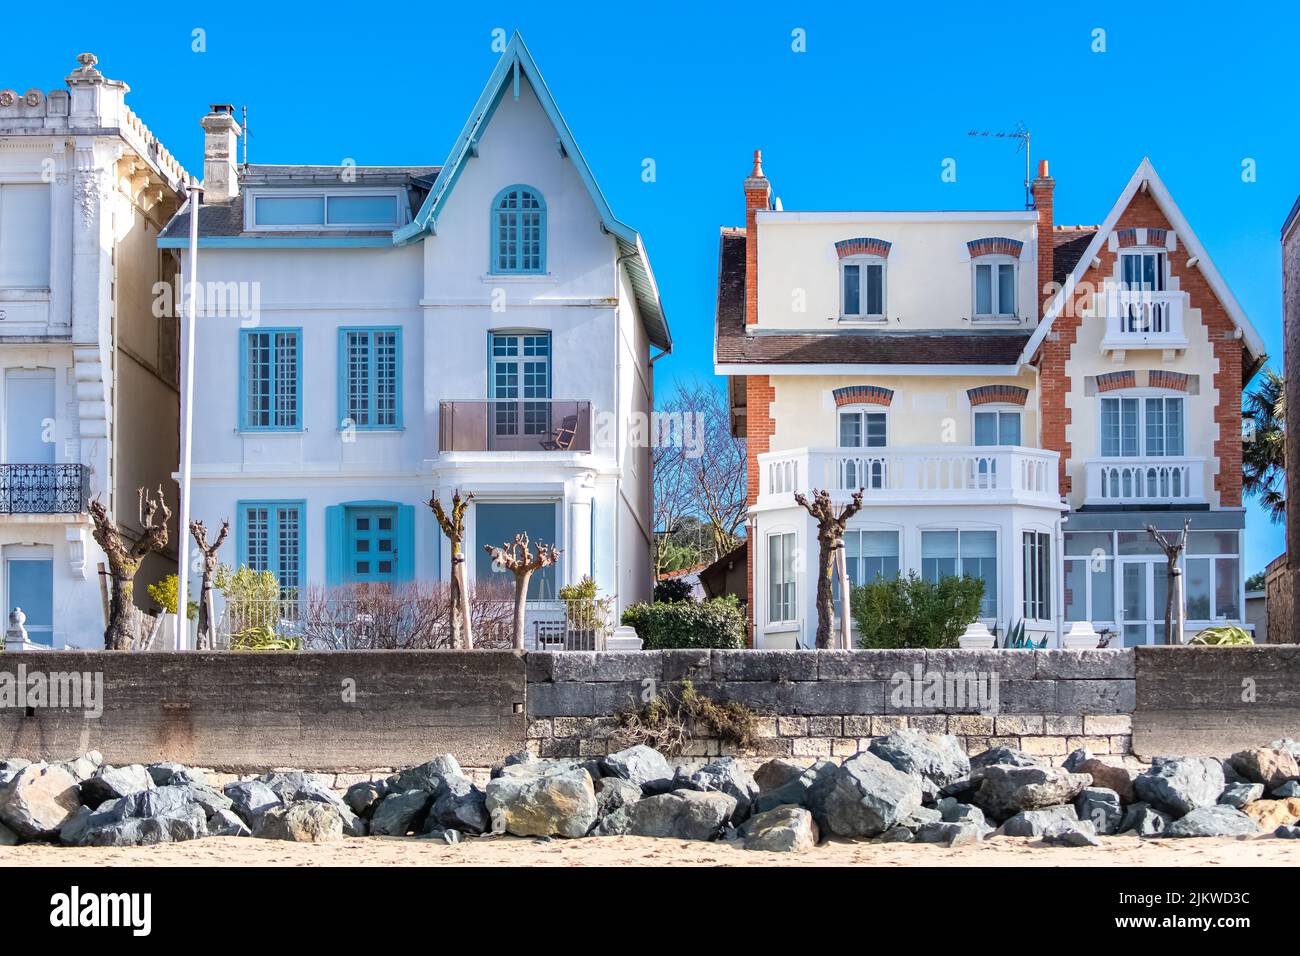 Royan en France, maison typique Belle Epoque sur la côte, station balnéaire Banque D'Images